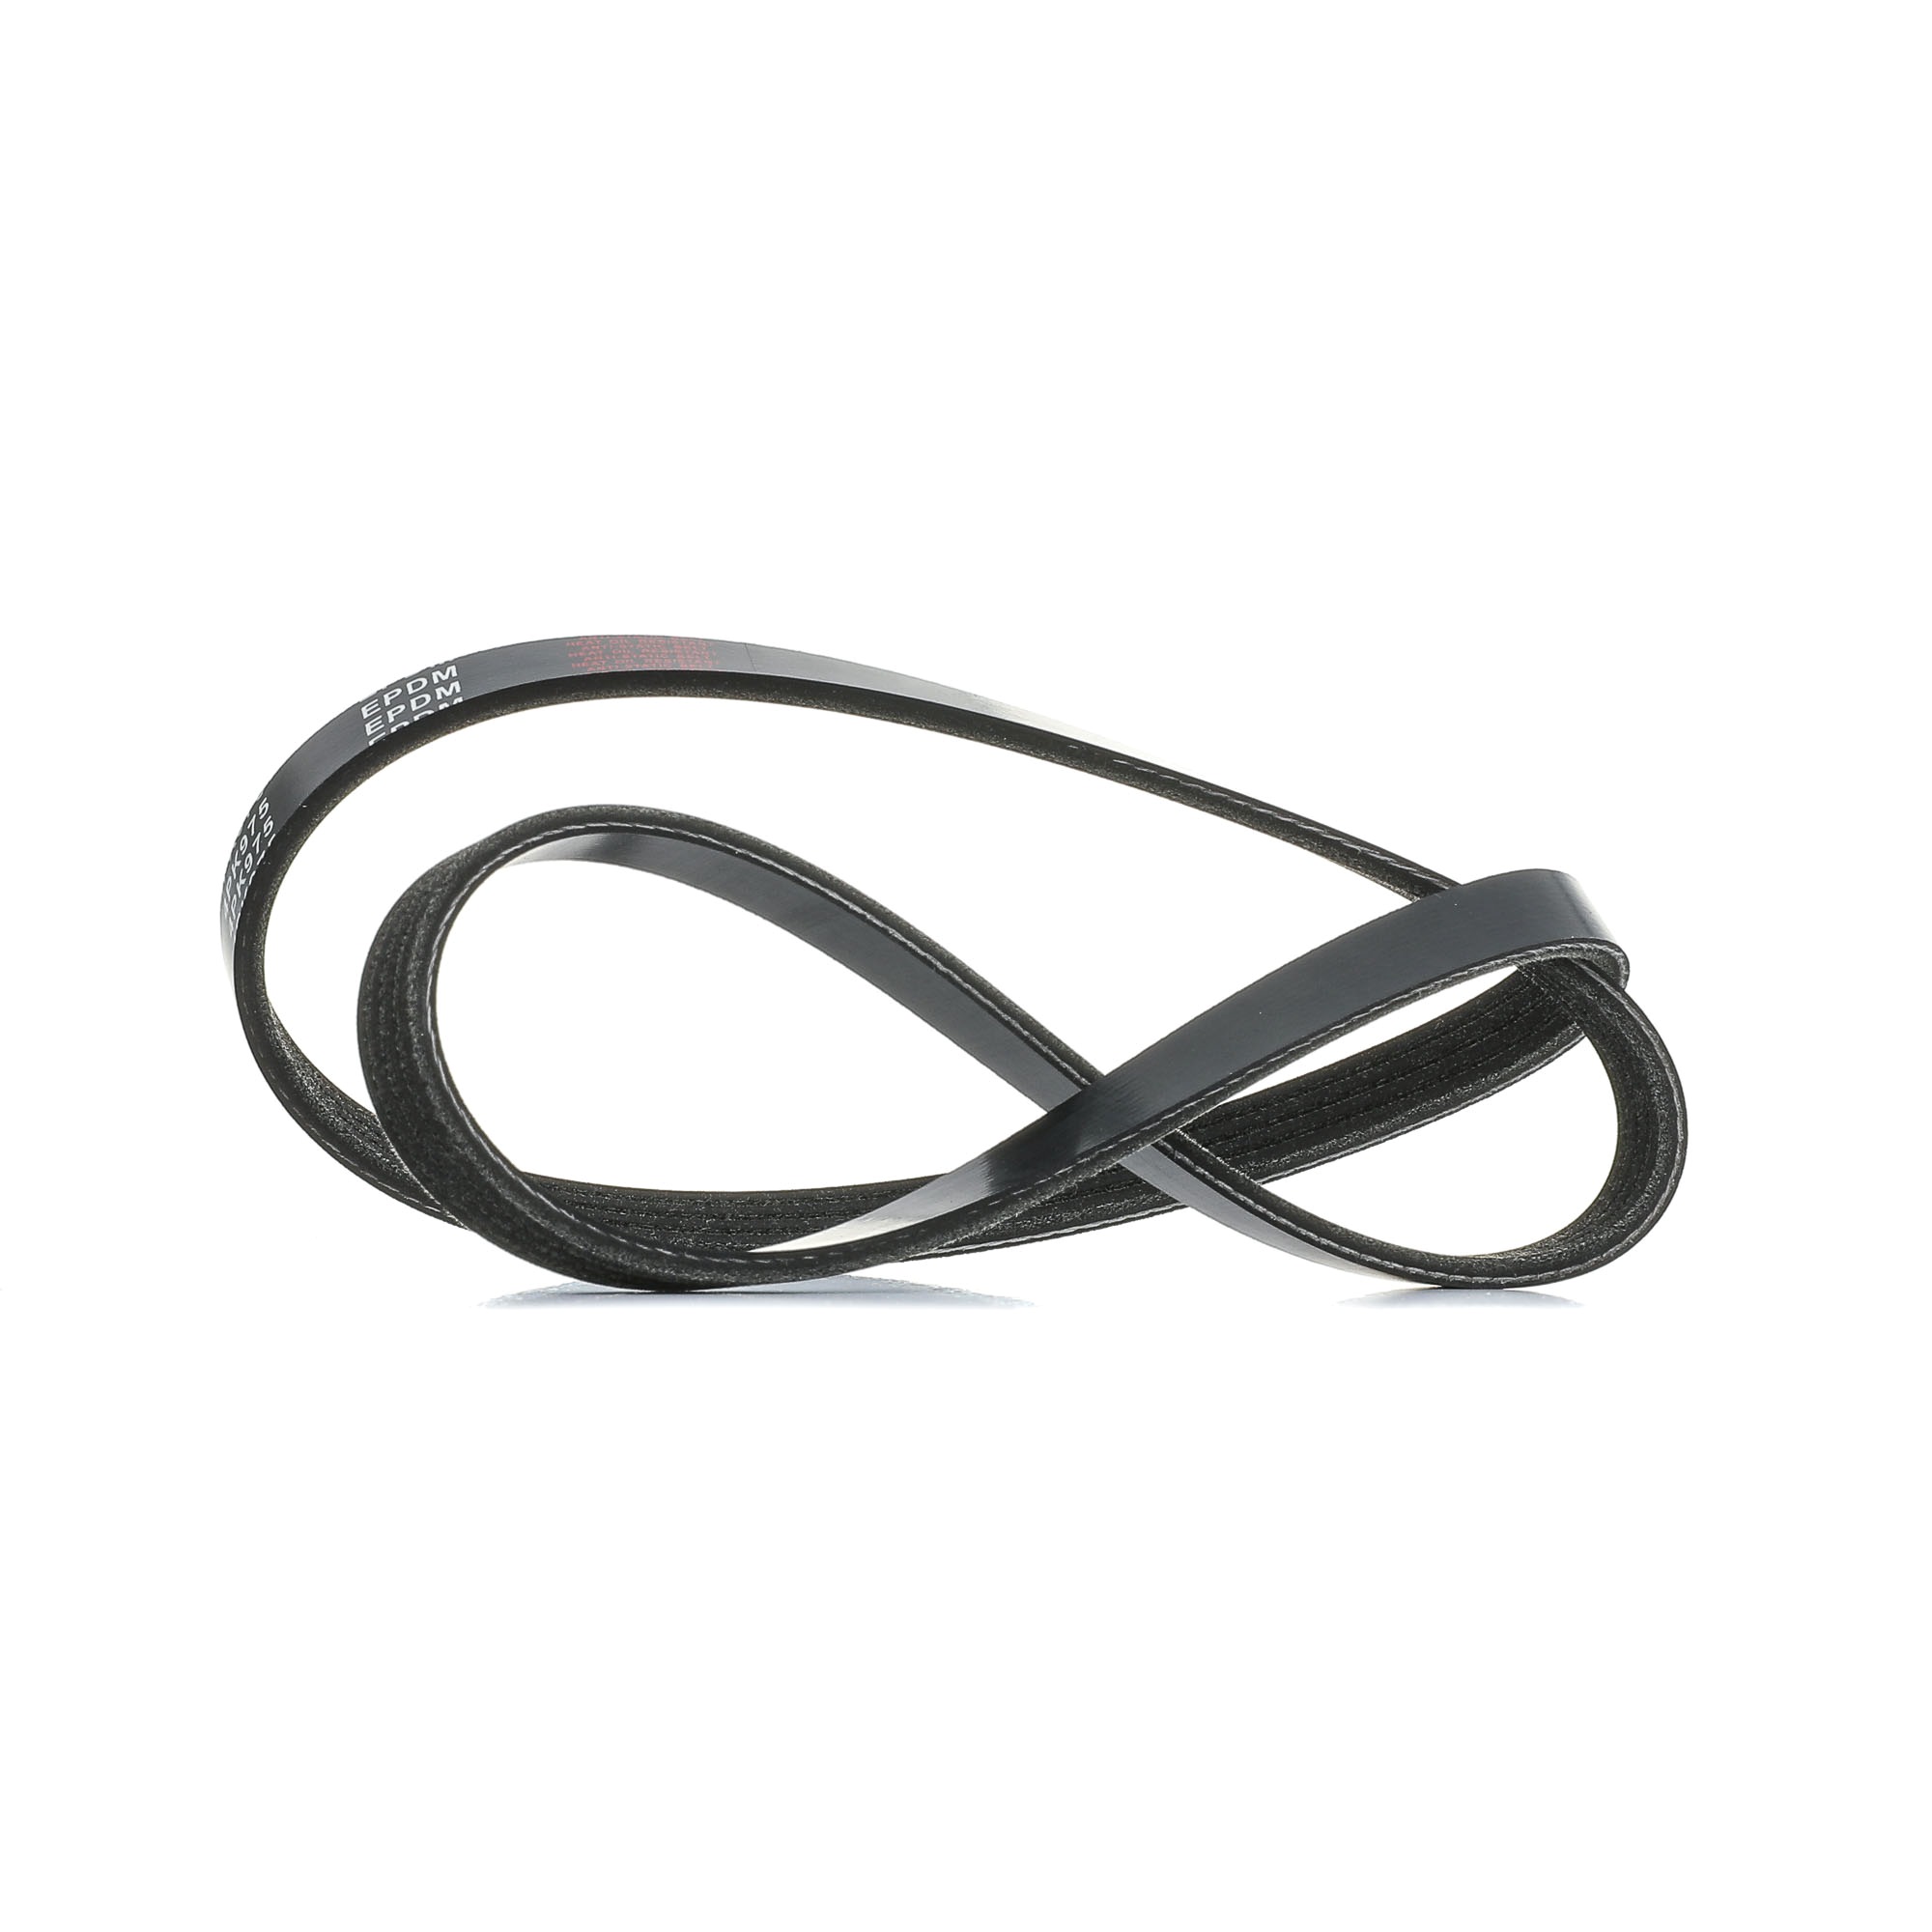 Image of RIDEX V-ribbed belt BMW,FORD,FIAT 305P0375 64557785212,04573737,4573737 Serpentine belt,Auxiliary belt,Poly V-belt,Ribbed belt,Multi V-belt,Poly belt